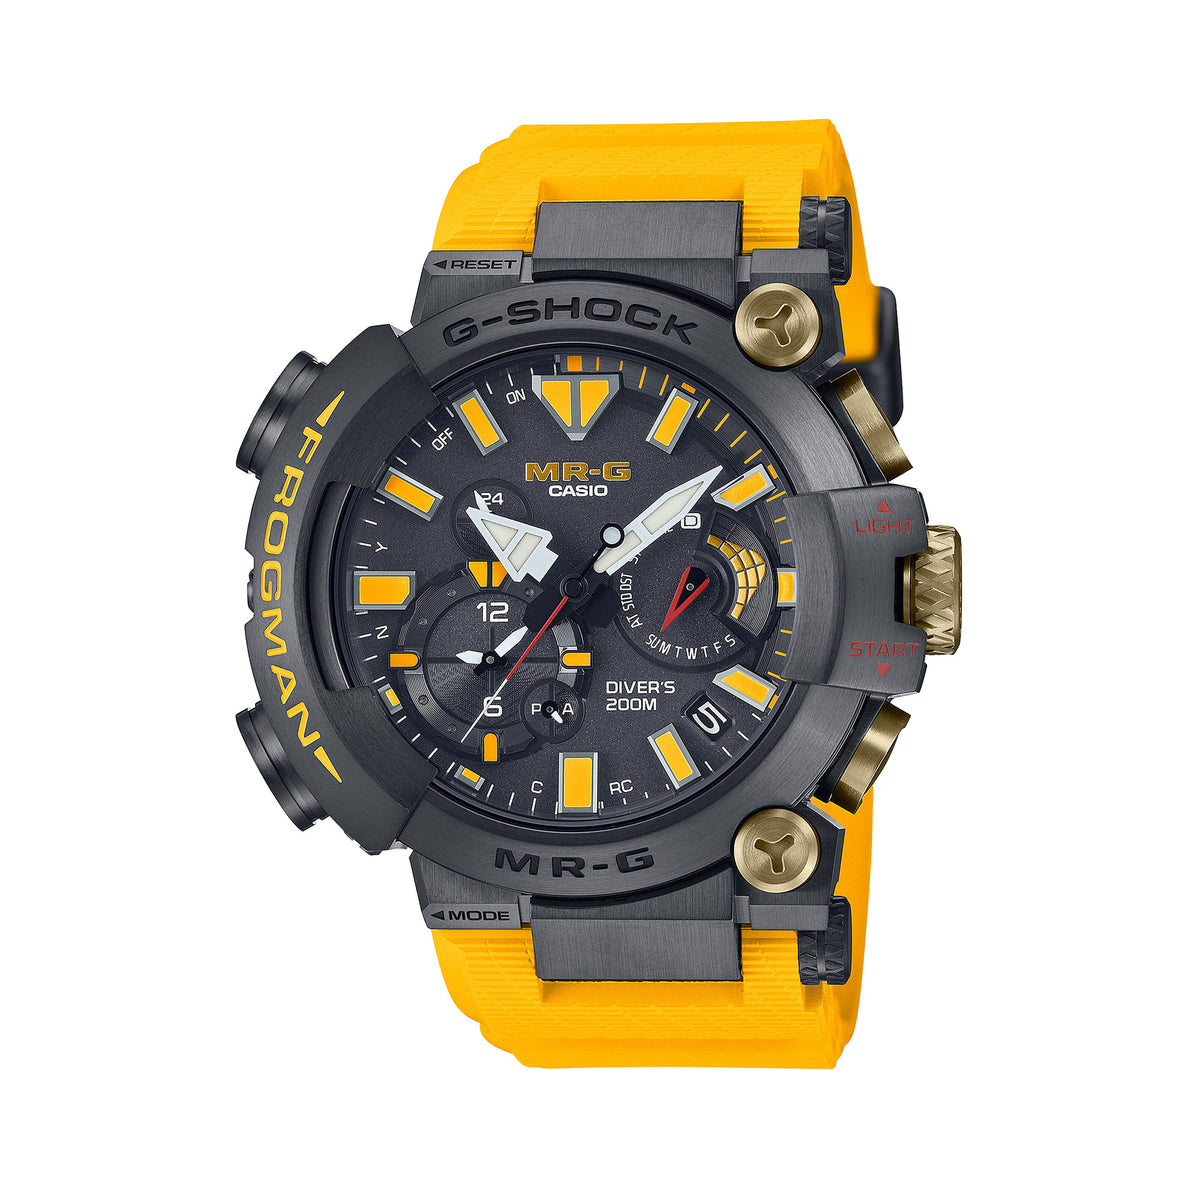 Casio G-SHOCK MR-G Solar Watch MRGBF1000-1A9